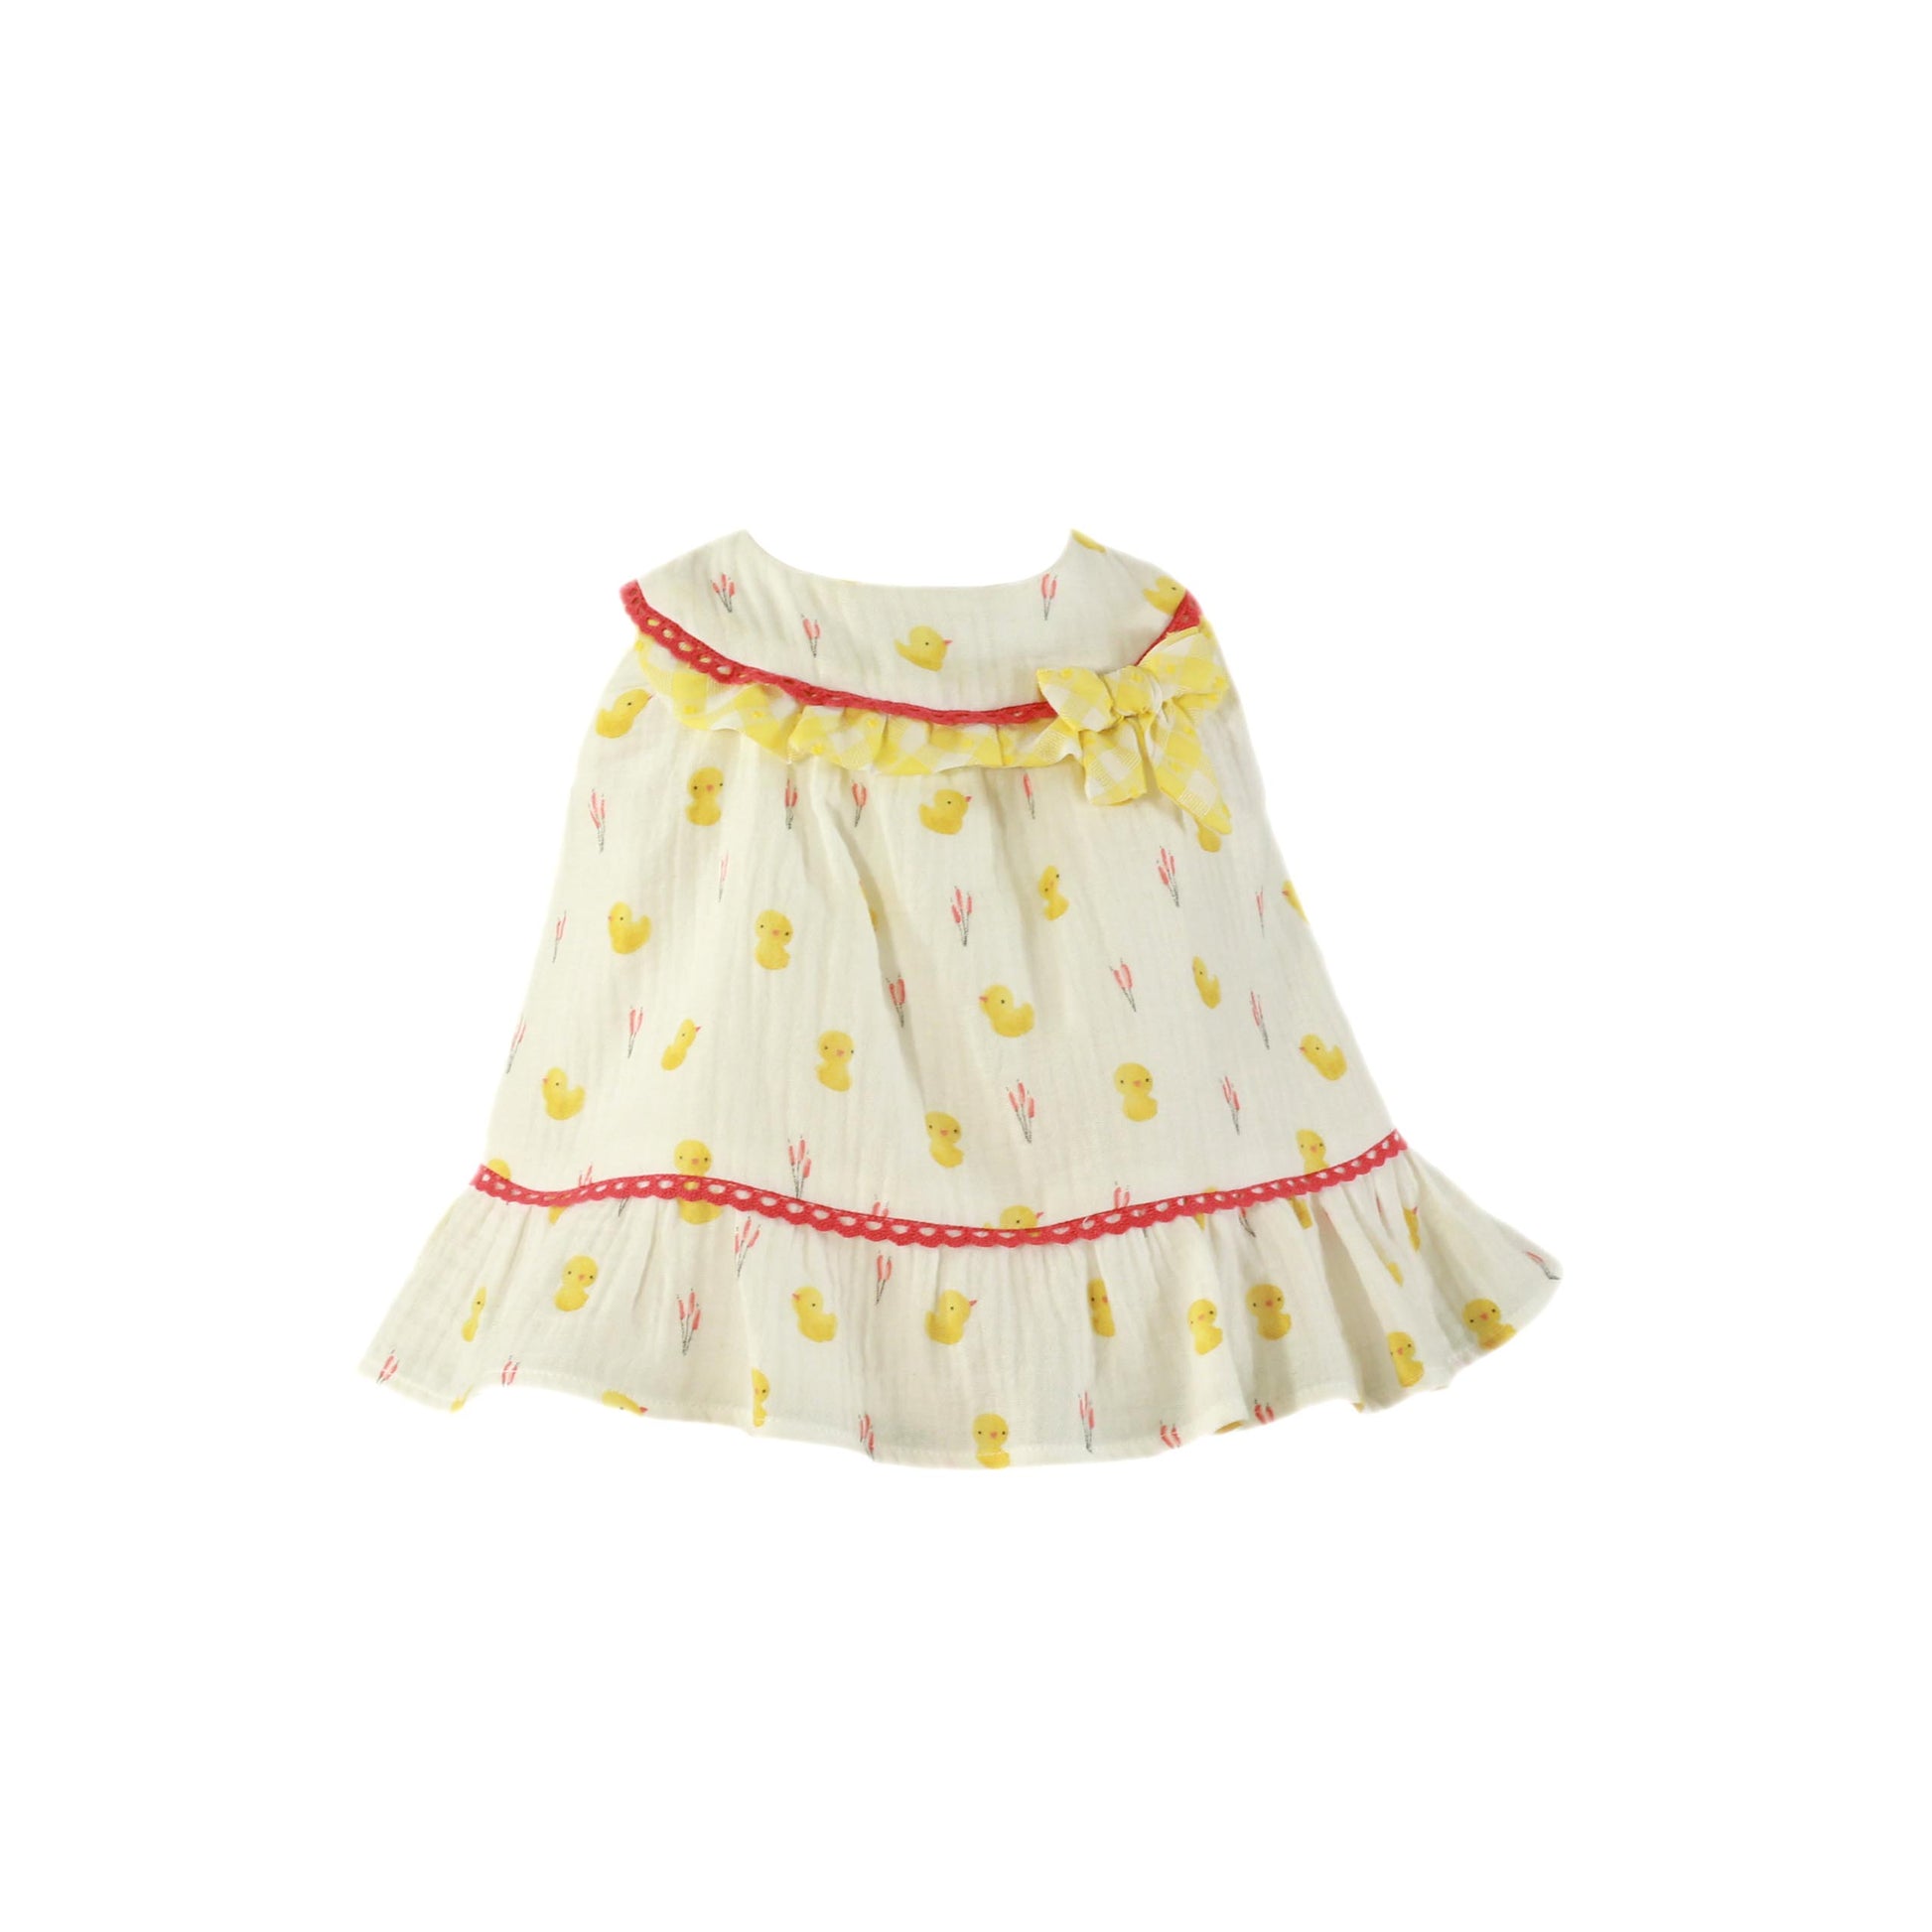 MIRANDA Lemon Little Chick Baby Girls Dress - 31V